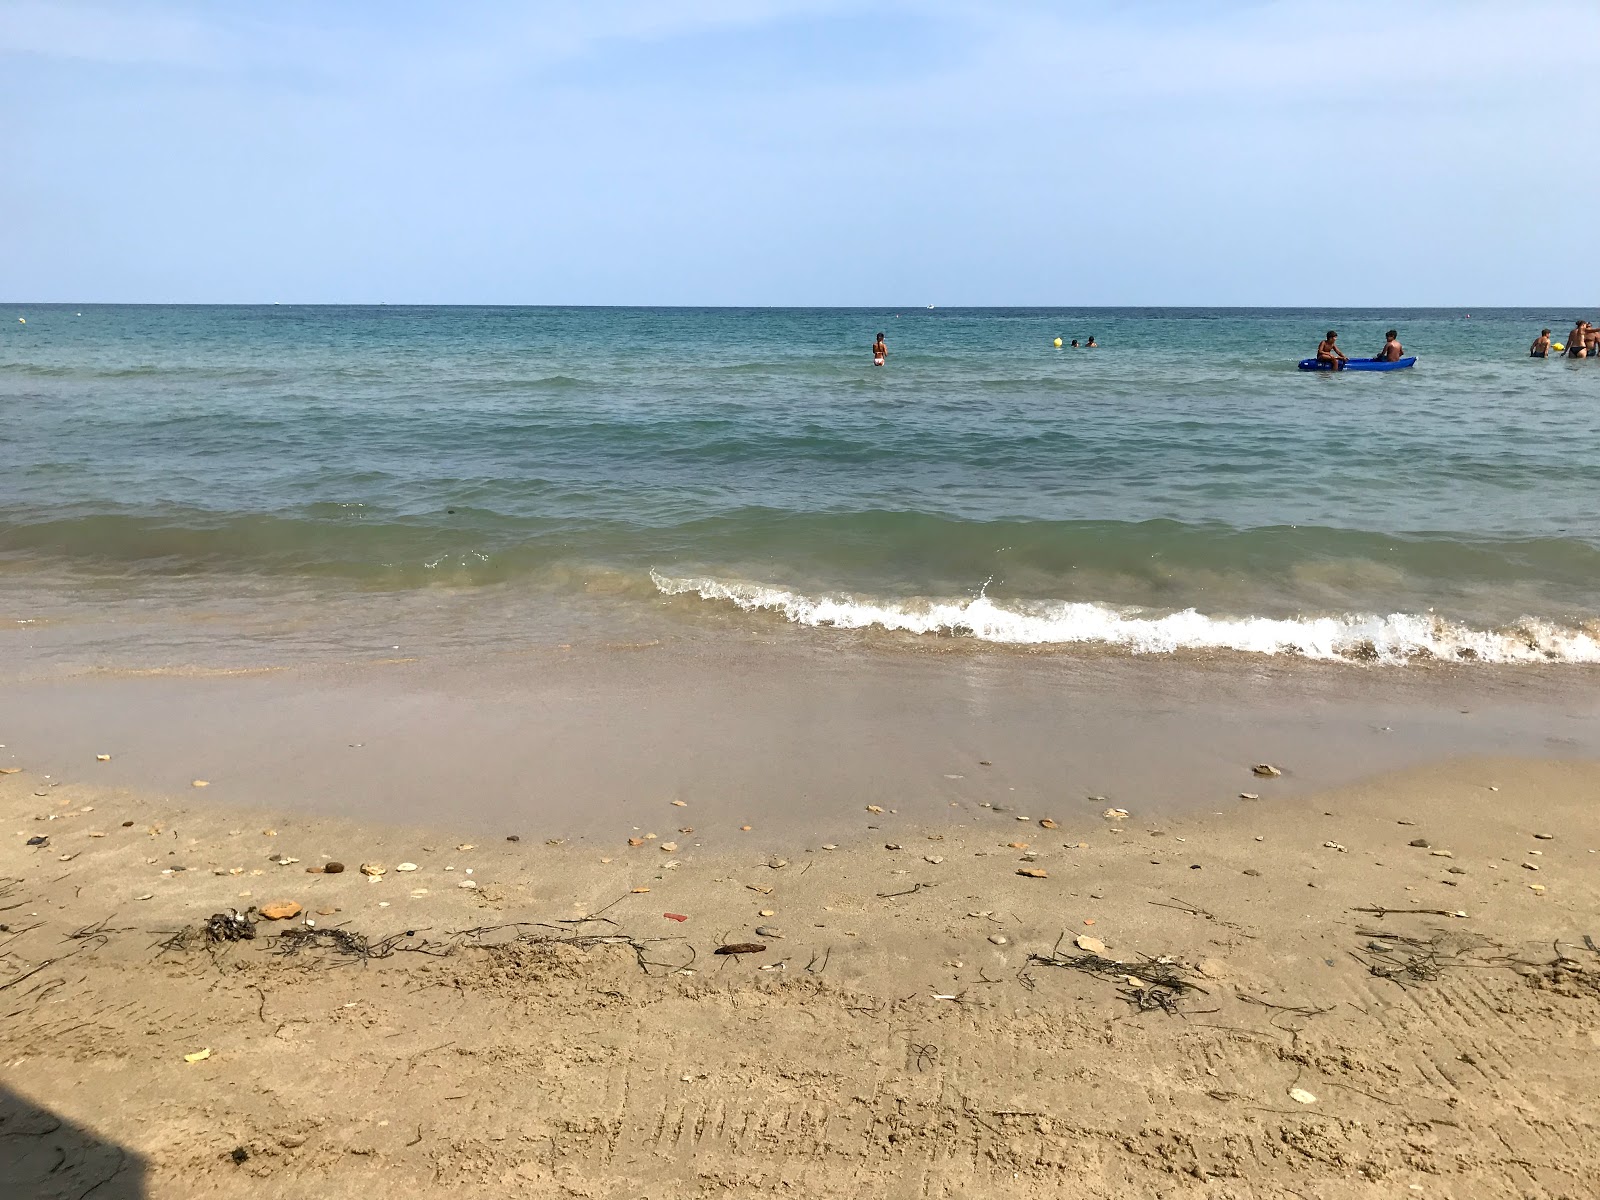 Fotografie cu Casalabate beach - locul popular printre cunoscătorii de relaxare